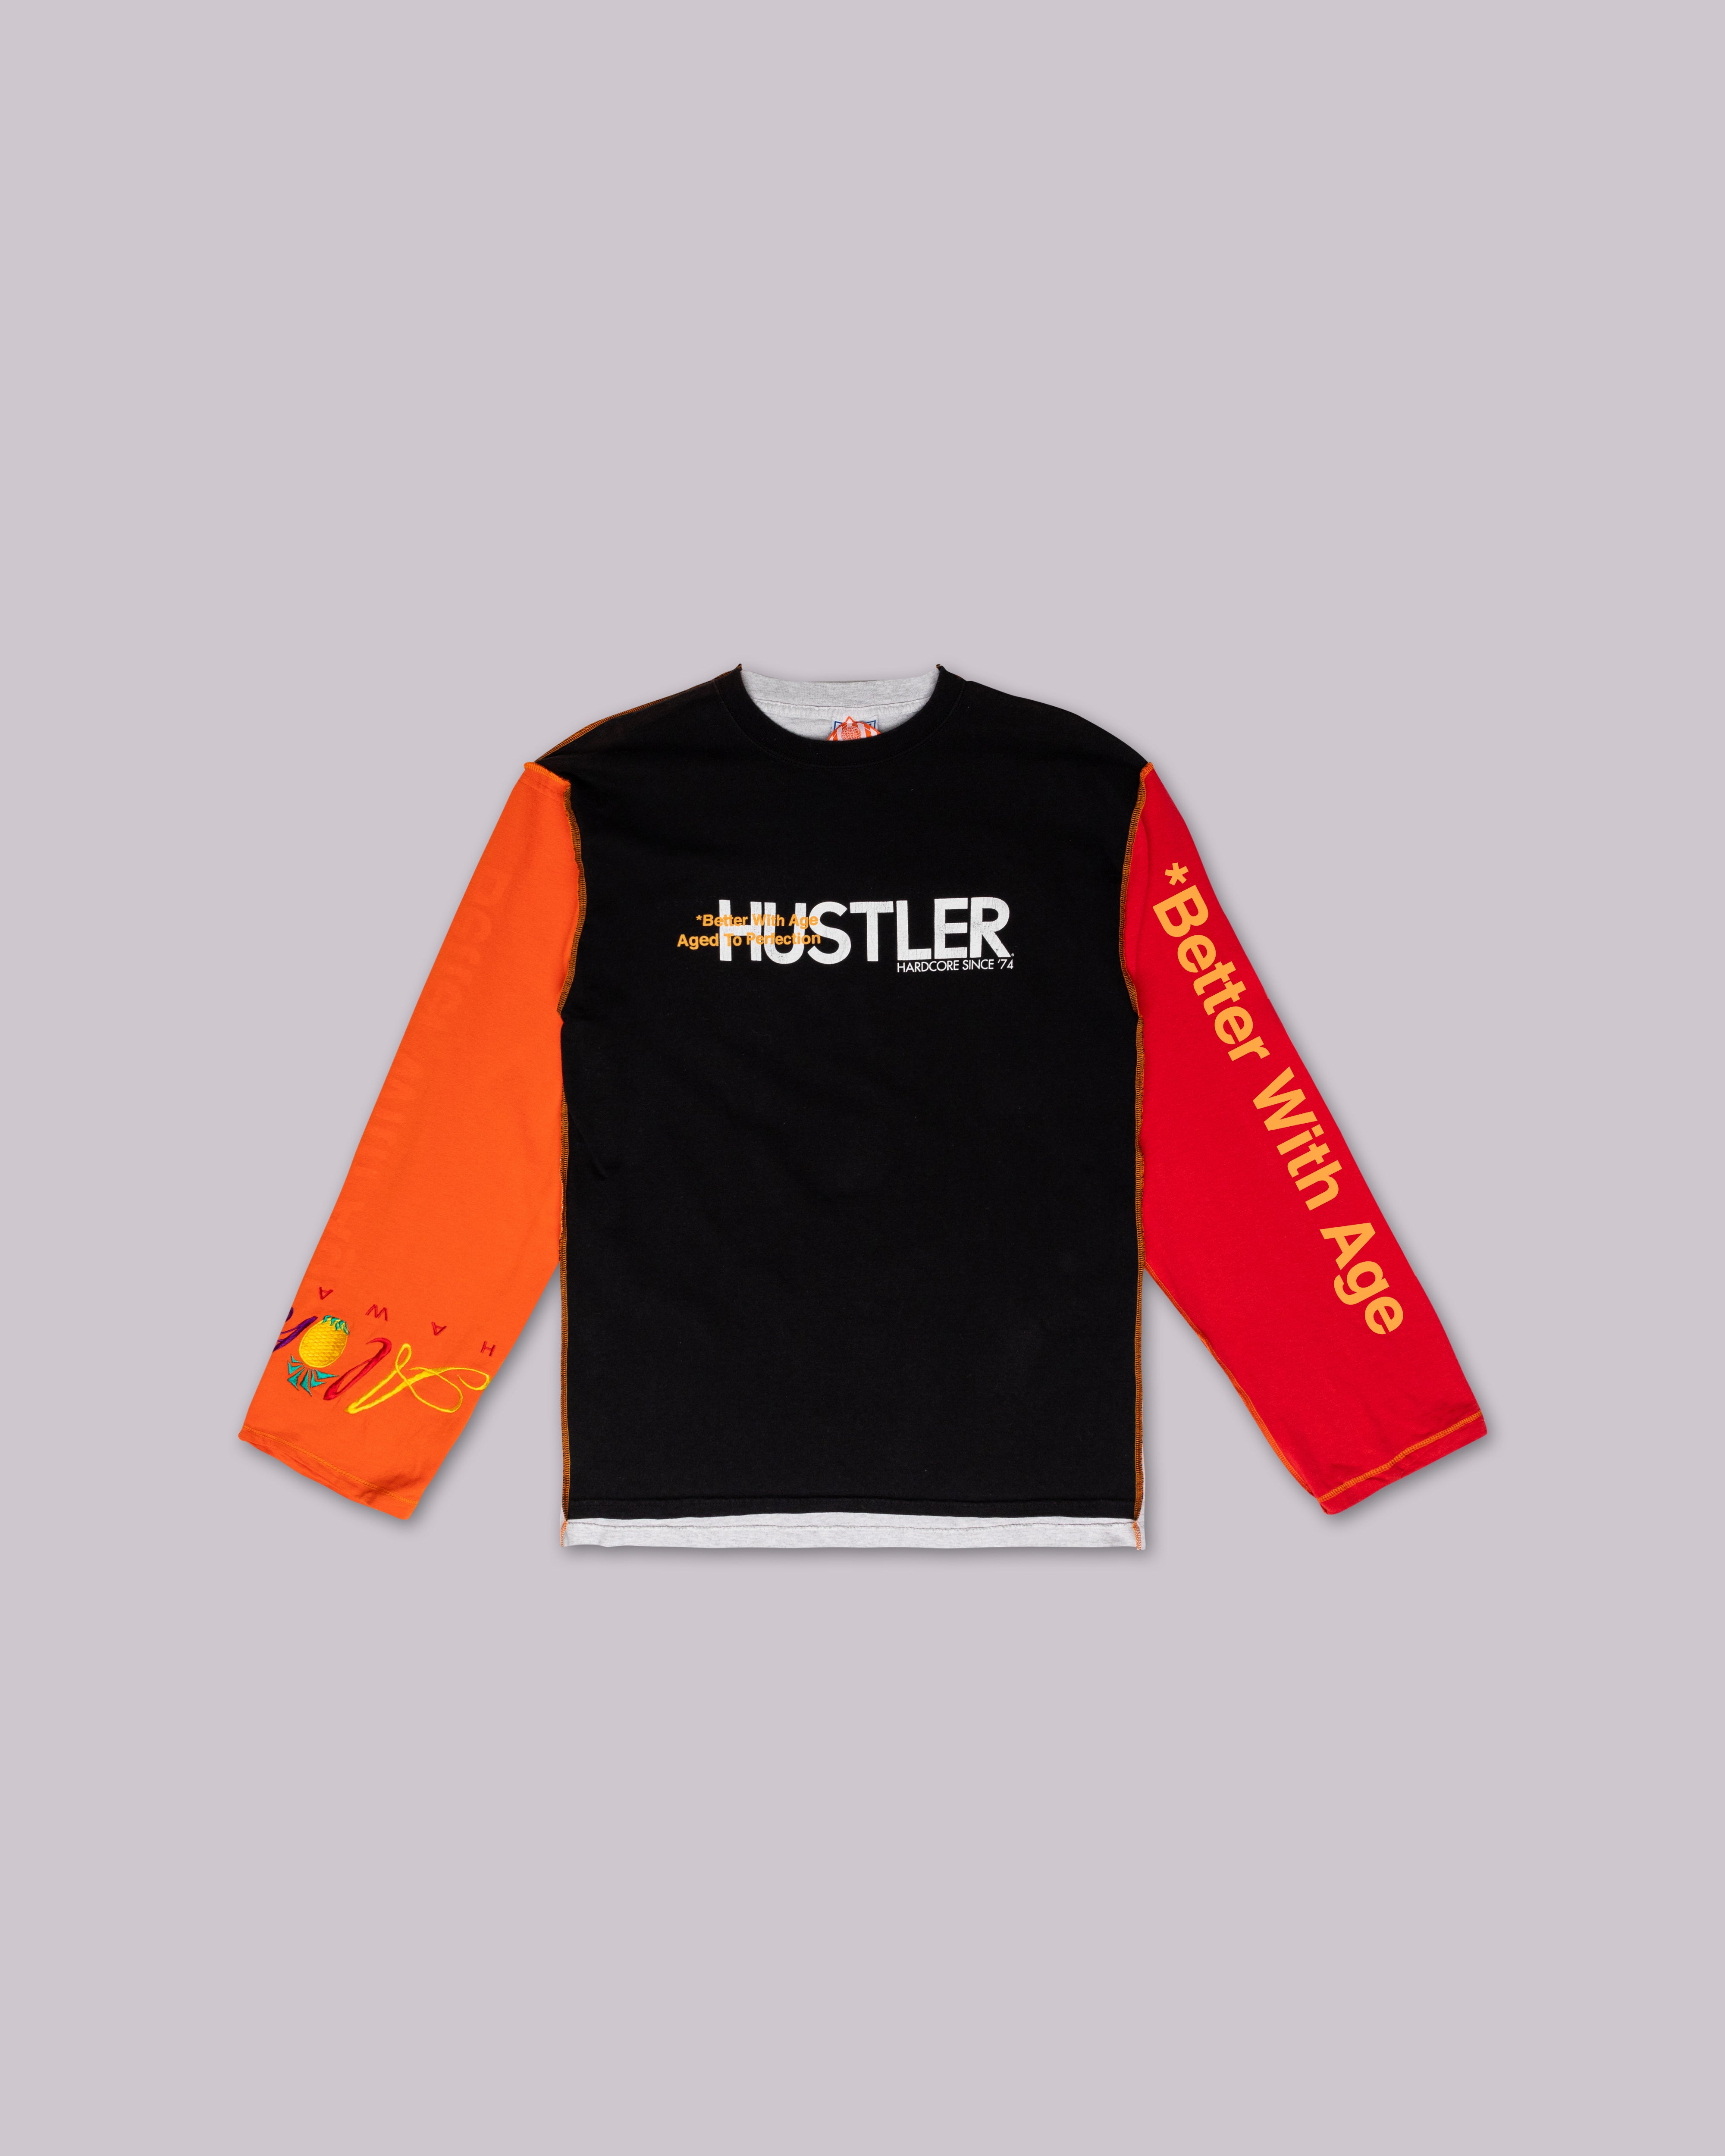 BETTER TOGETHER - HUSTLER XL